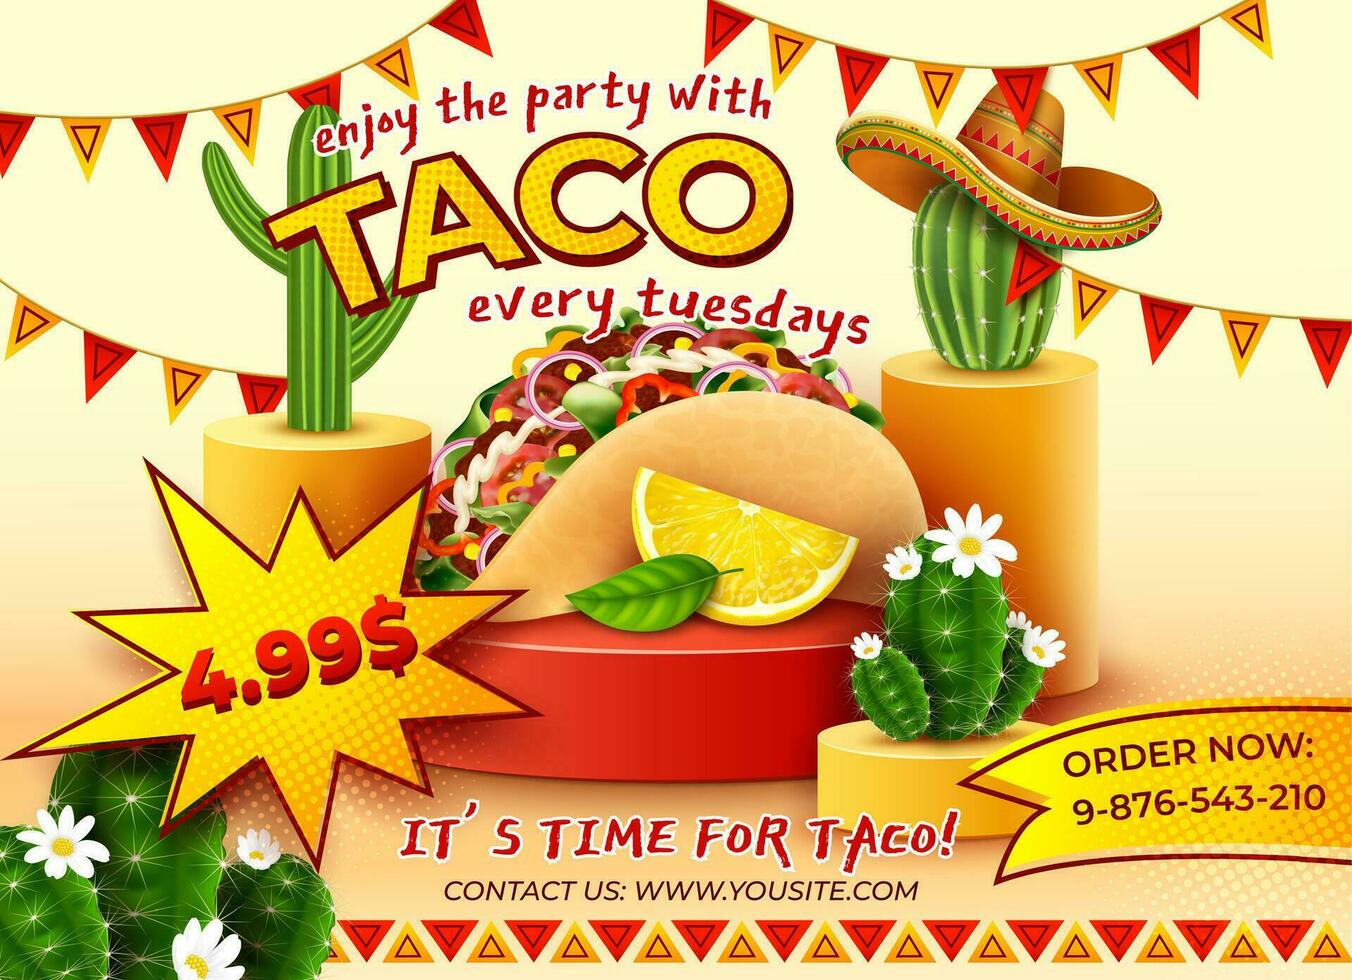 realista detallado 3d tacos mexicano comida fiesta cada jueves anuncios bandera concepto póster tarjeta. vector